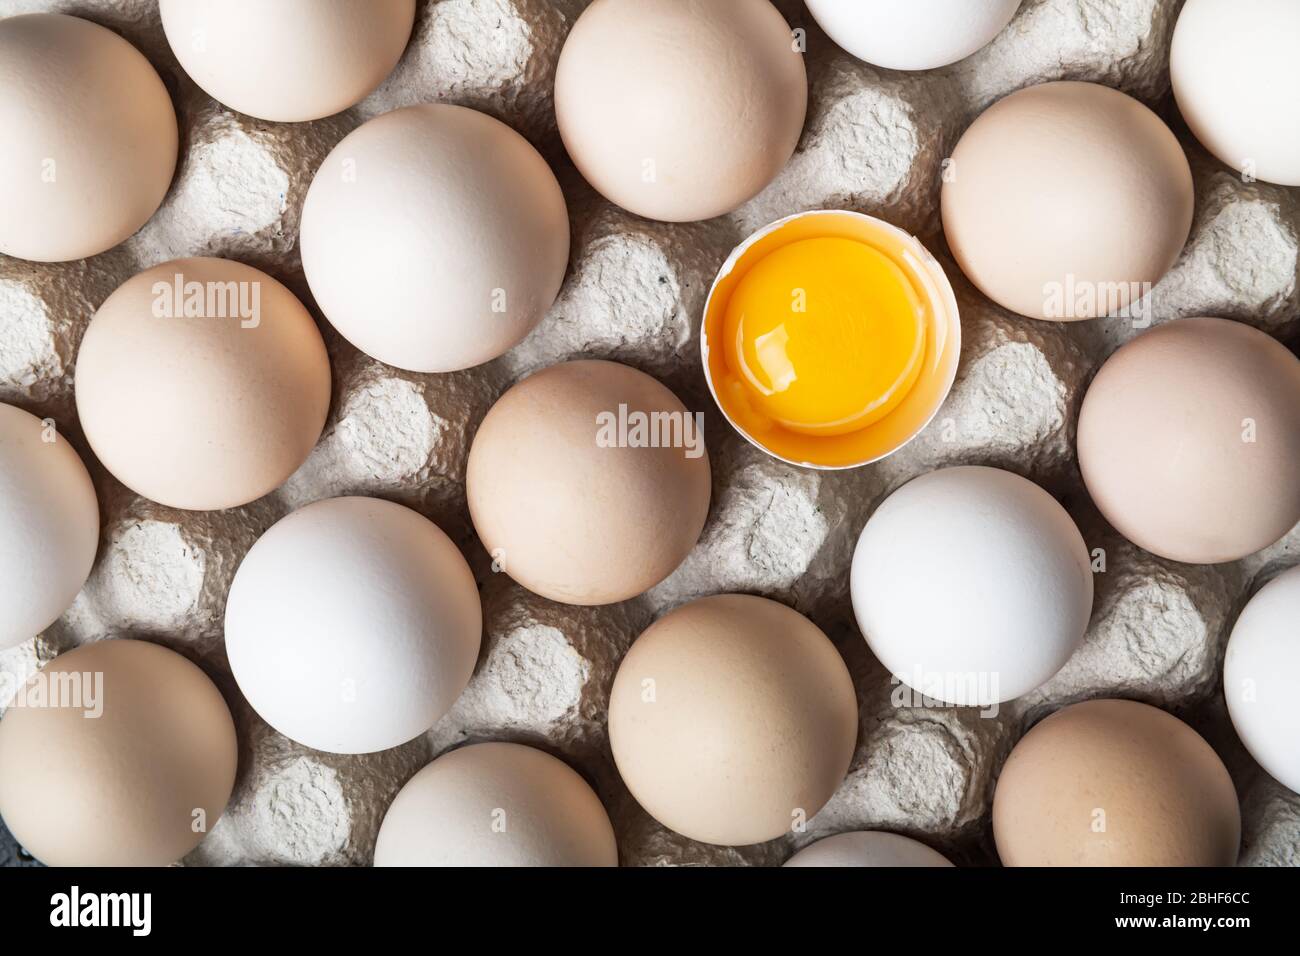 Uova di pollo in imballaggi biologici primo piano. Metà dell'uovo rotta tra le altre uova. Fotografia alimentare Foto Stock